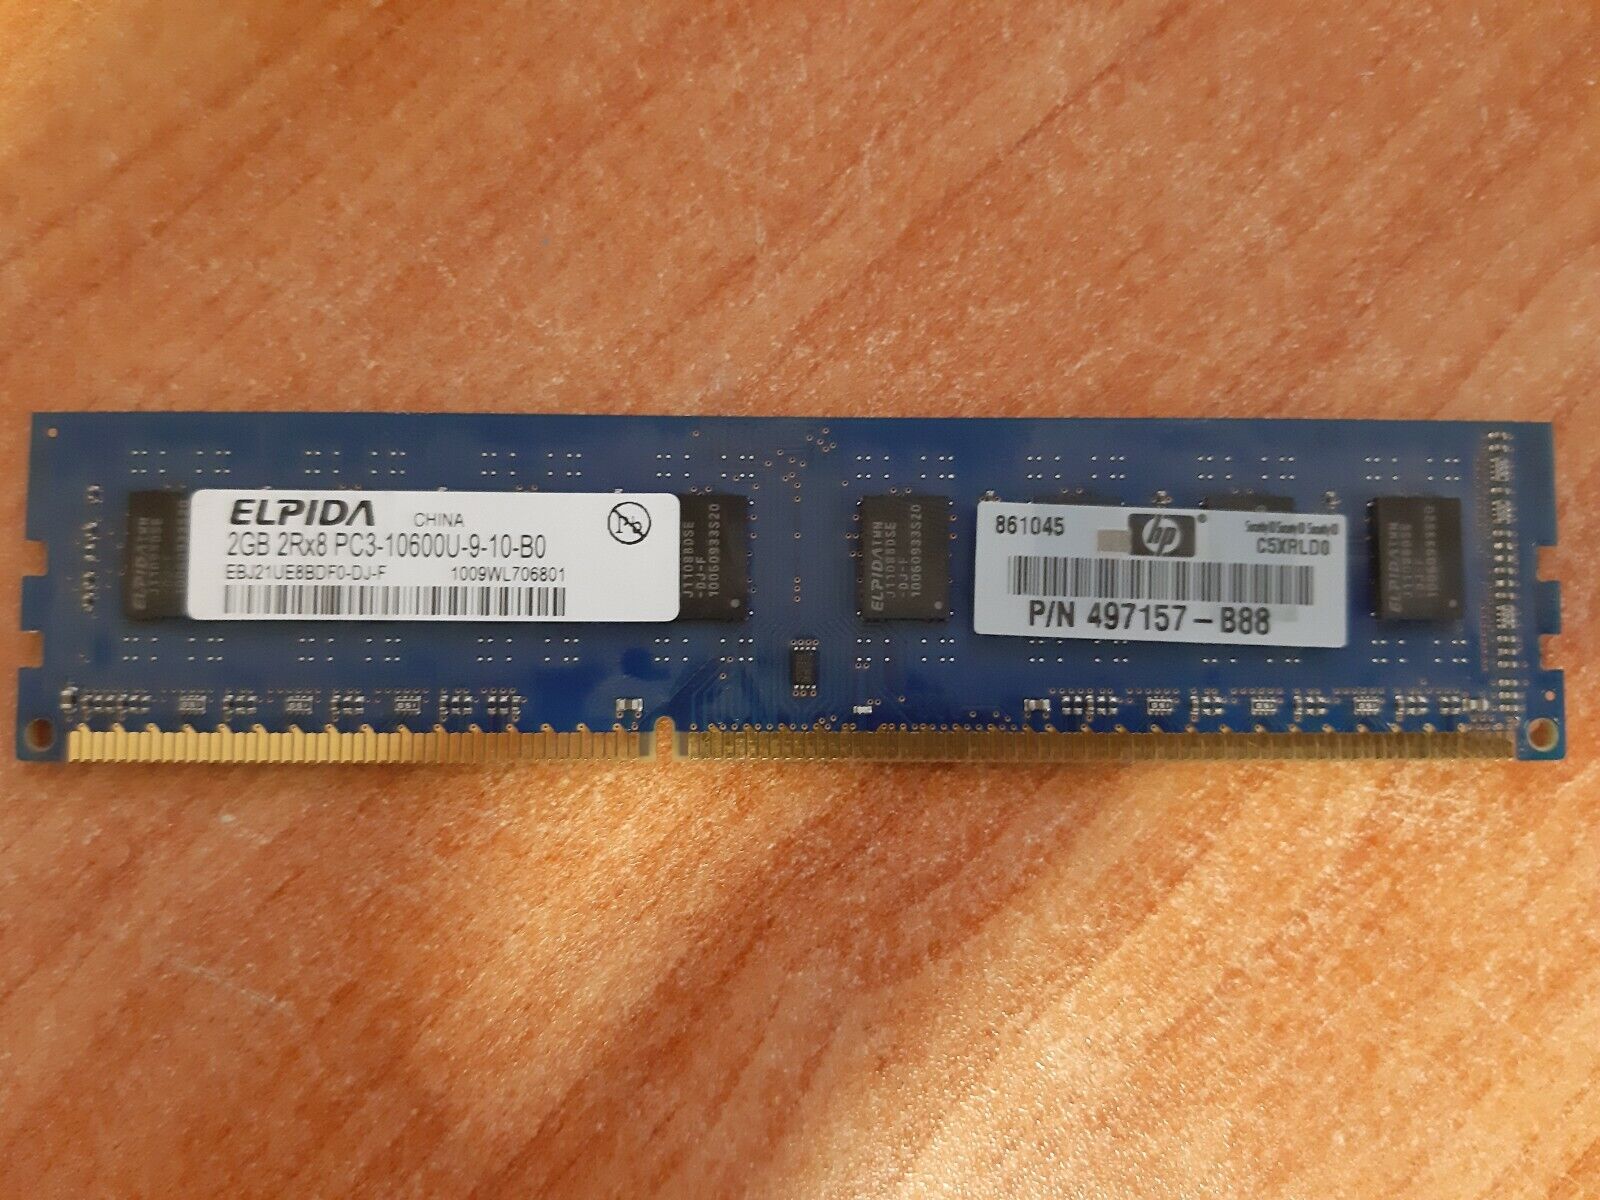 Elpida 2GB DDR3 PC3-10600U 1333MHz EBJ20UF8BCF0-DJ-F / EBJ21UE8BDF0-DJ-F